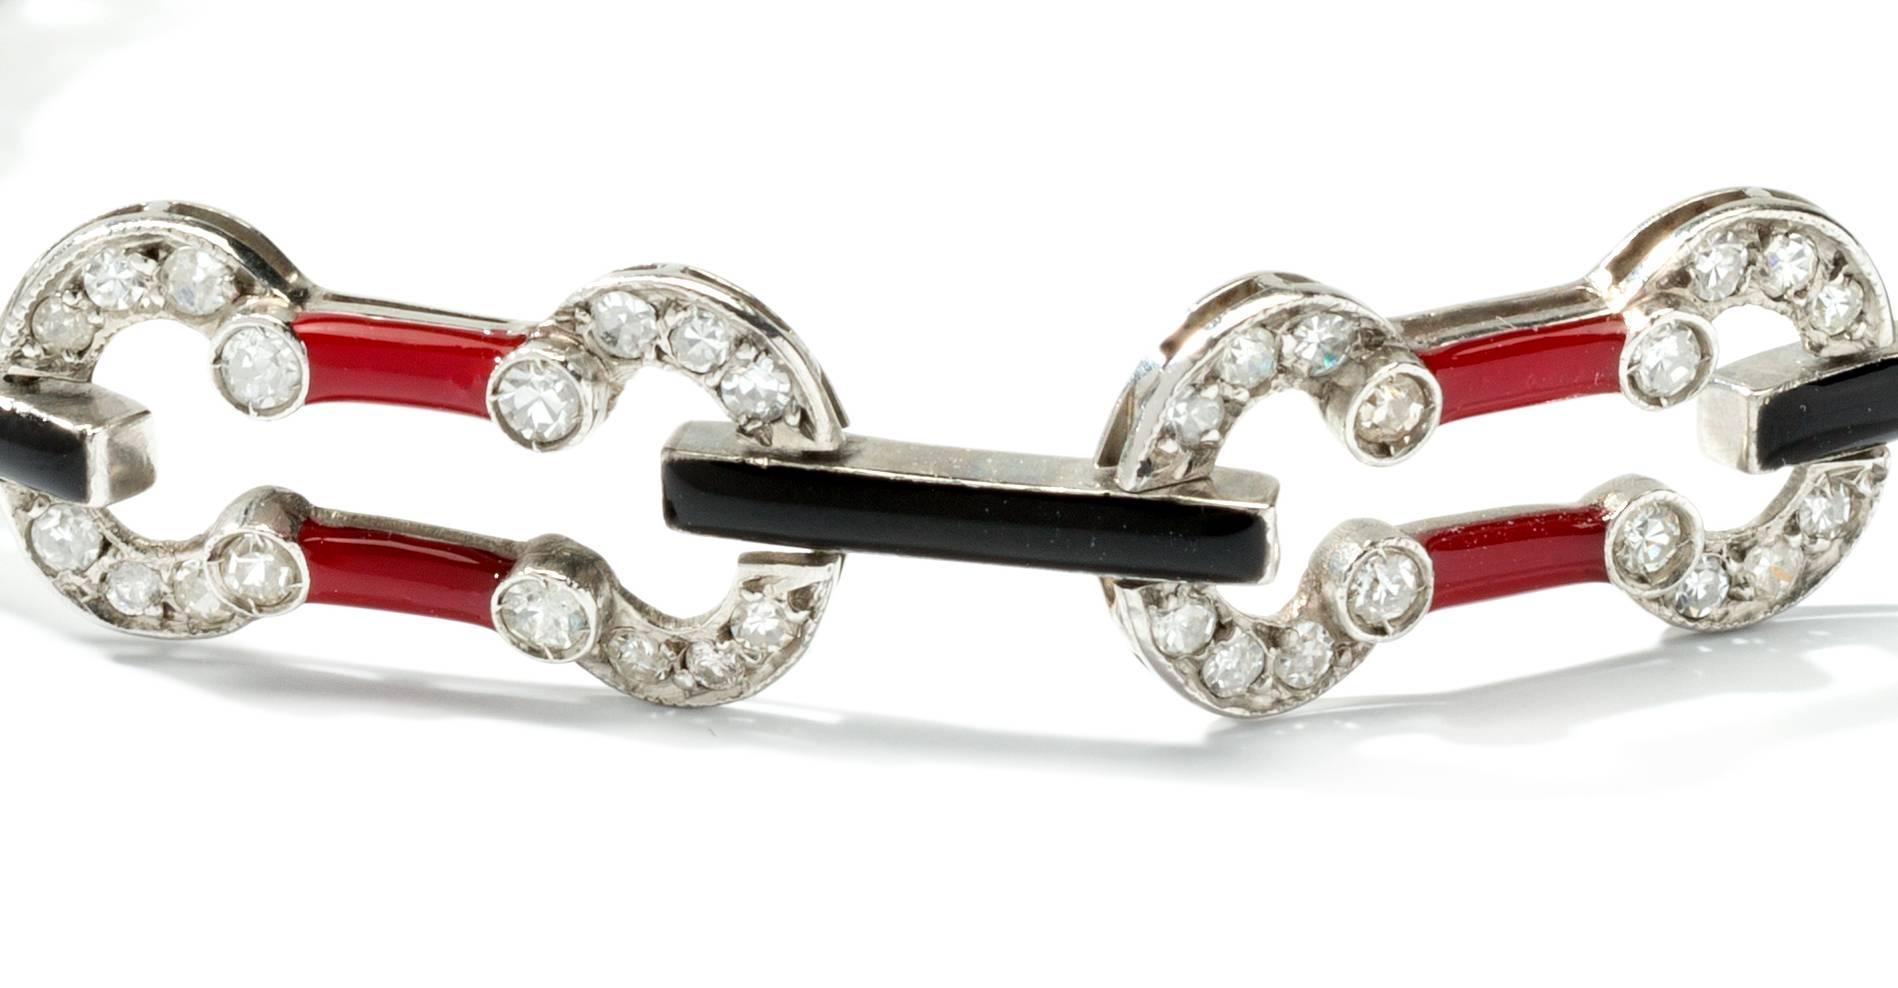 Europa, um 1930. Art Deco, besetzt mit 128 Diamanten im Einzelschliff mit einem Gewicht von ca. 2,24 ct. Mit roter und schwarzer Emaille. In Platin gefasst. Gesamtgewicht: 11,56 Gramm. Länge: 18 cm (7,09 Zoll)